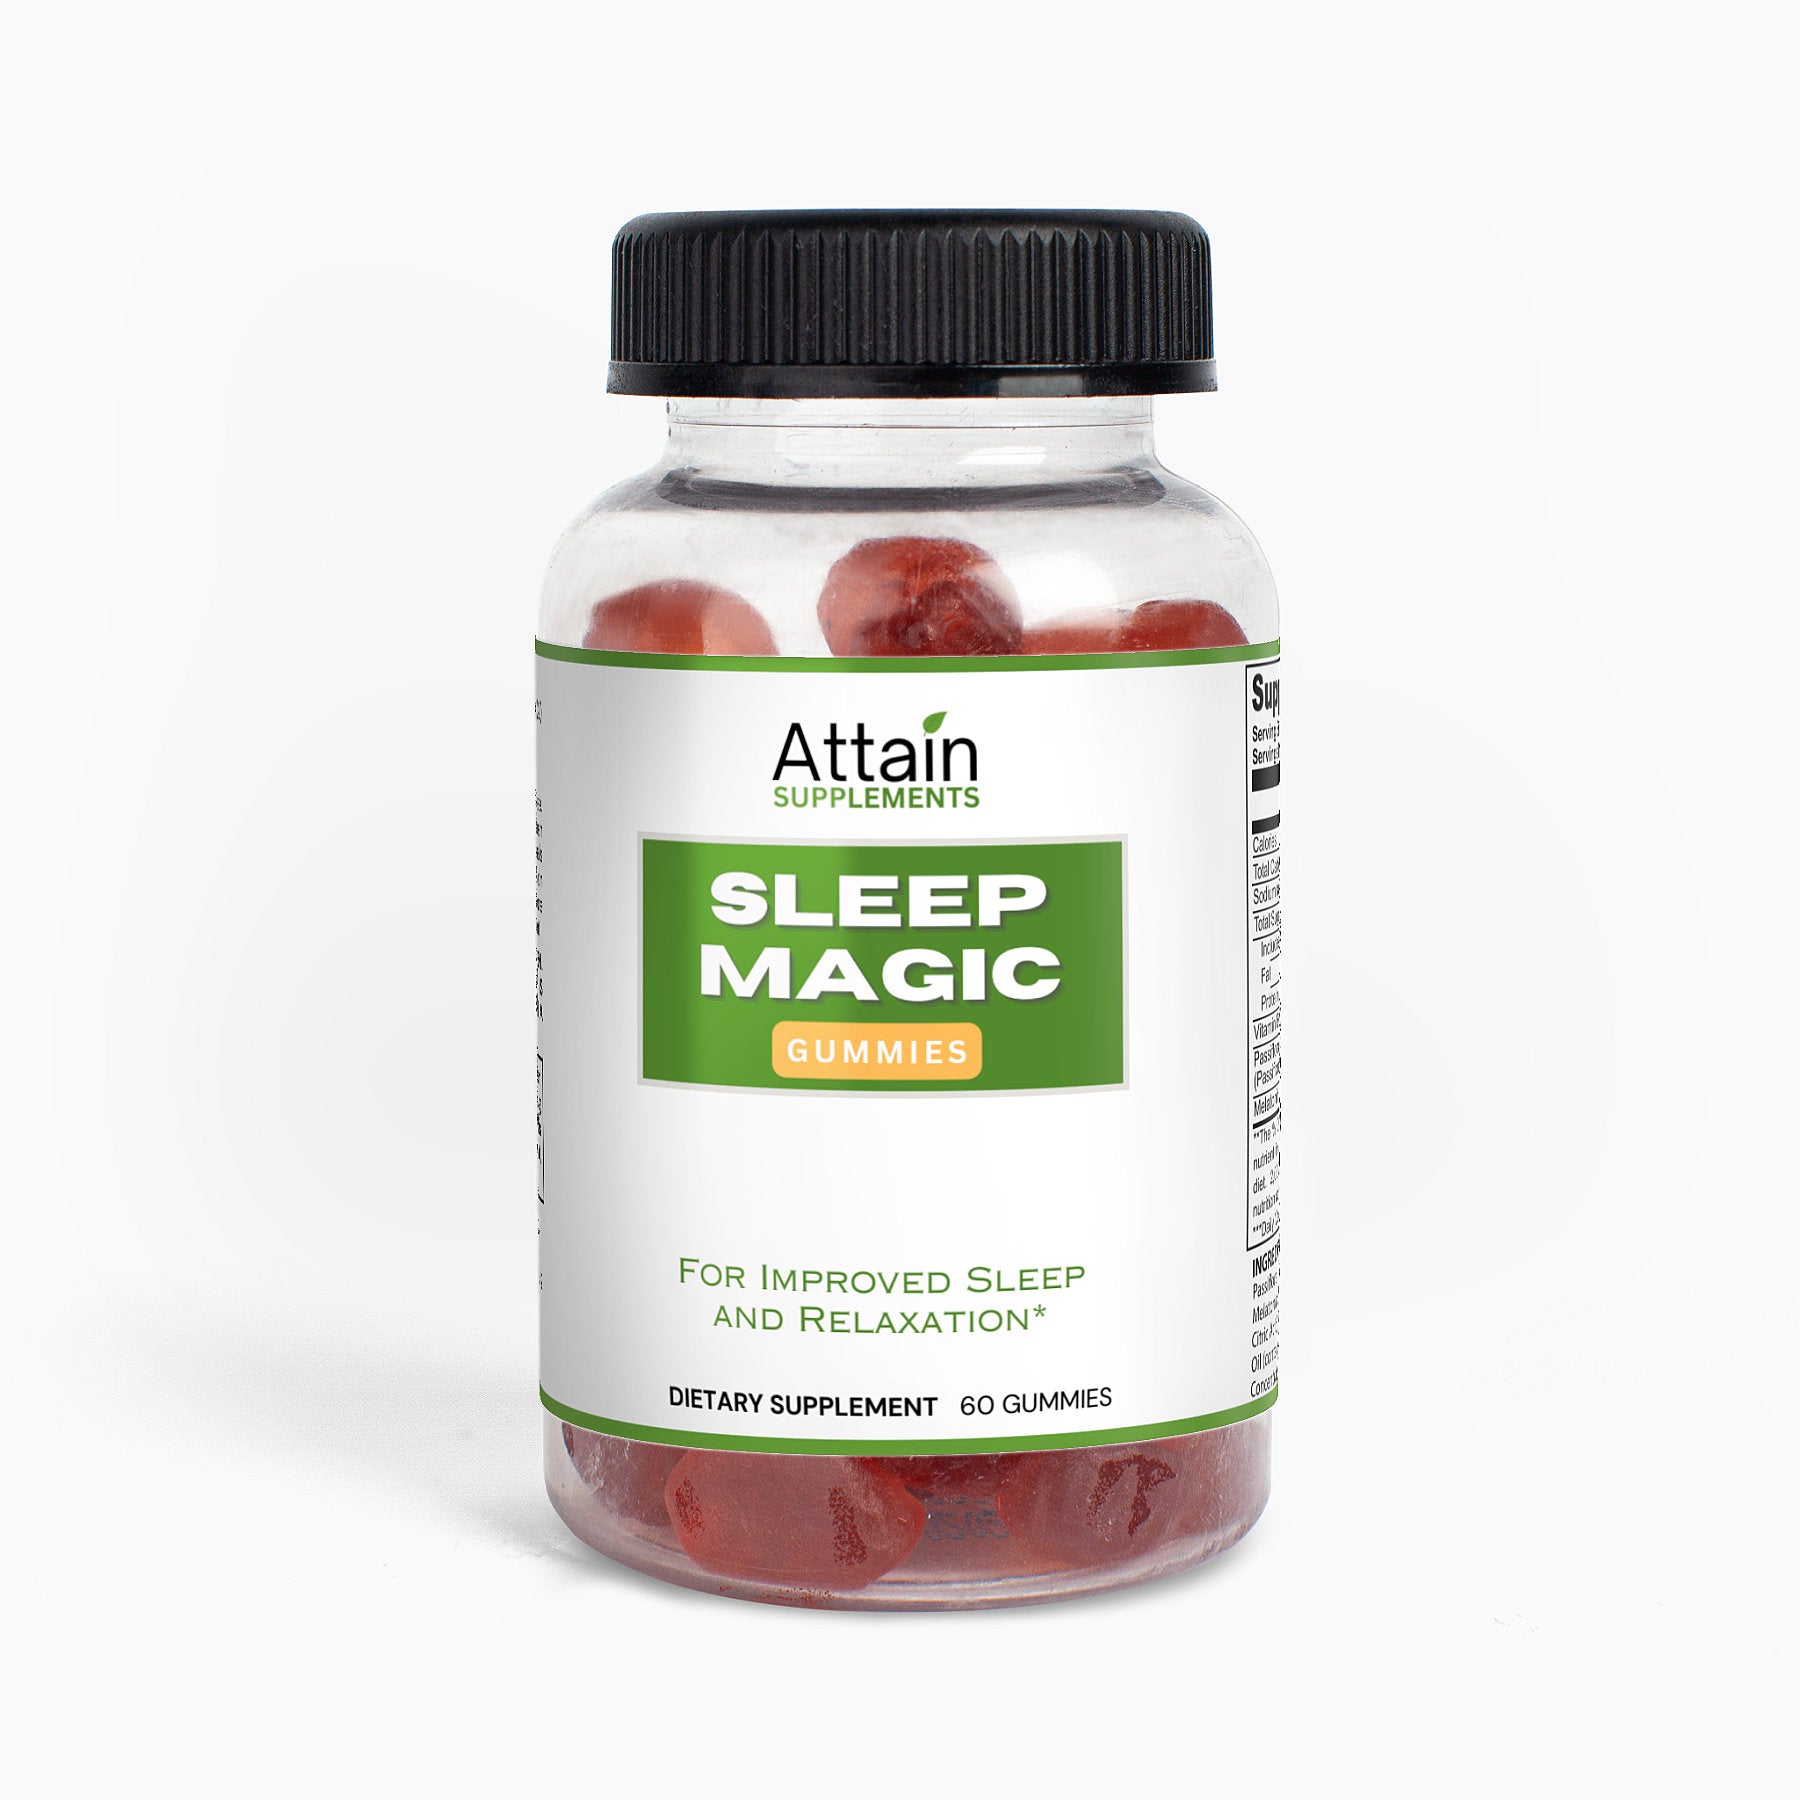 Sleep Magic Gummies for Adults - Attain Supplements